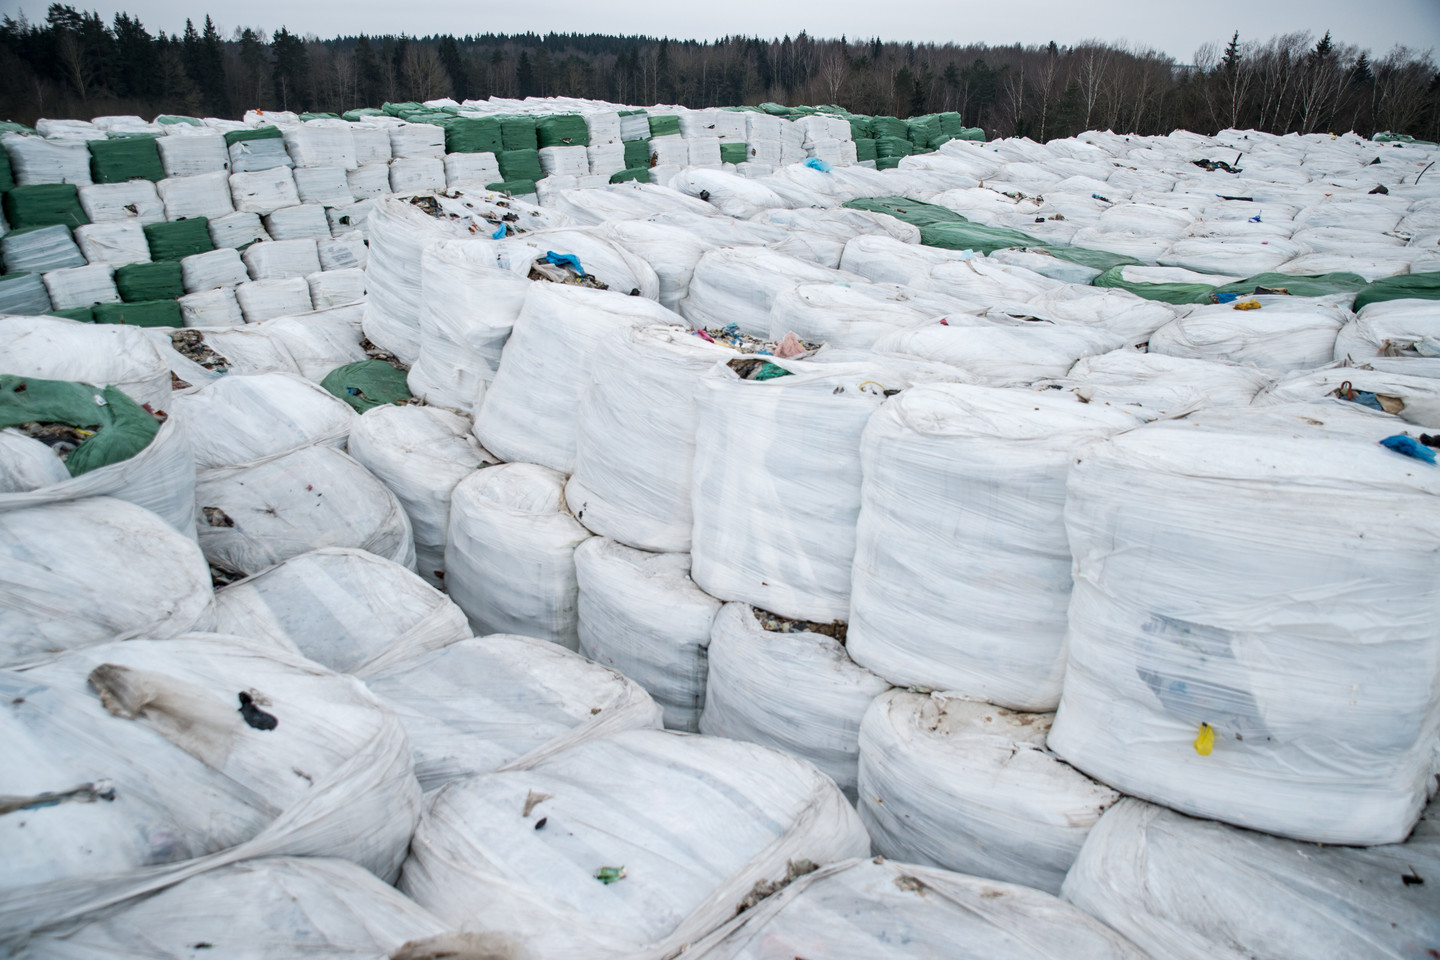  Marijampolės atliekų tvarkymo gamyklos teritorijoje susikaupė per 6 tūkst. tonų neišvežtų degiųjų atliekų.